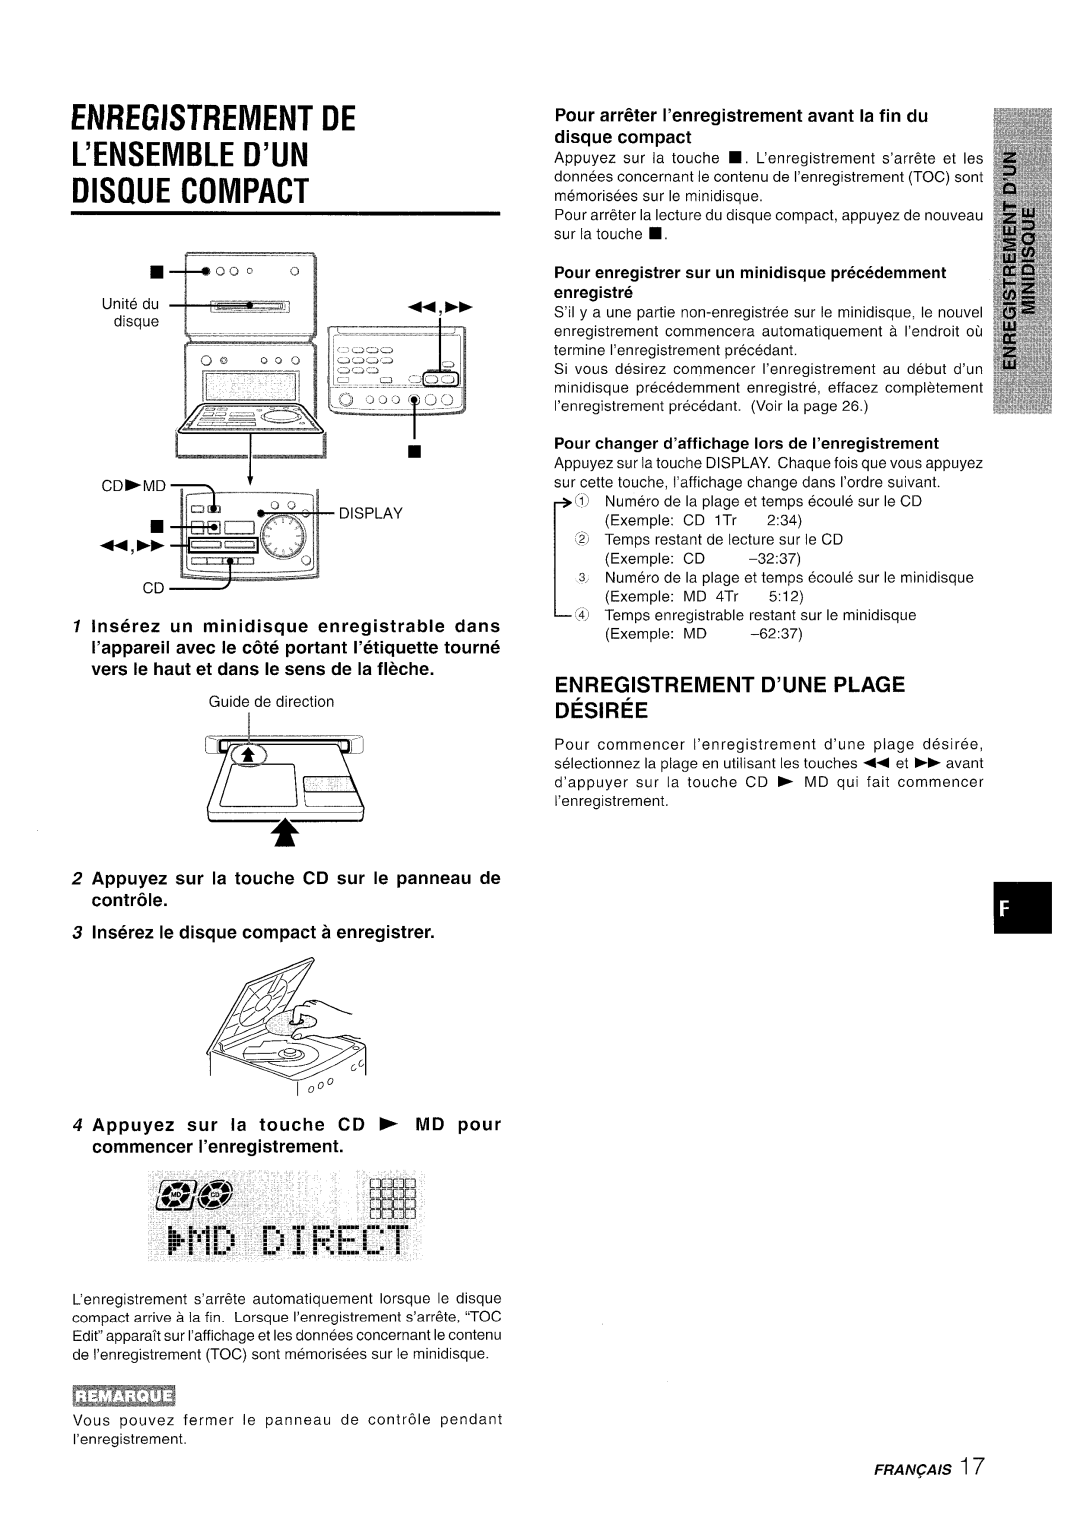 Aiwa XR-MD95 manual Enregistfiement De L’Ensemble D’Un Disque Compact, Enregistrement D’Une Plage Desiree 